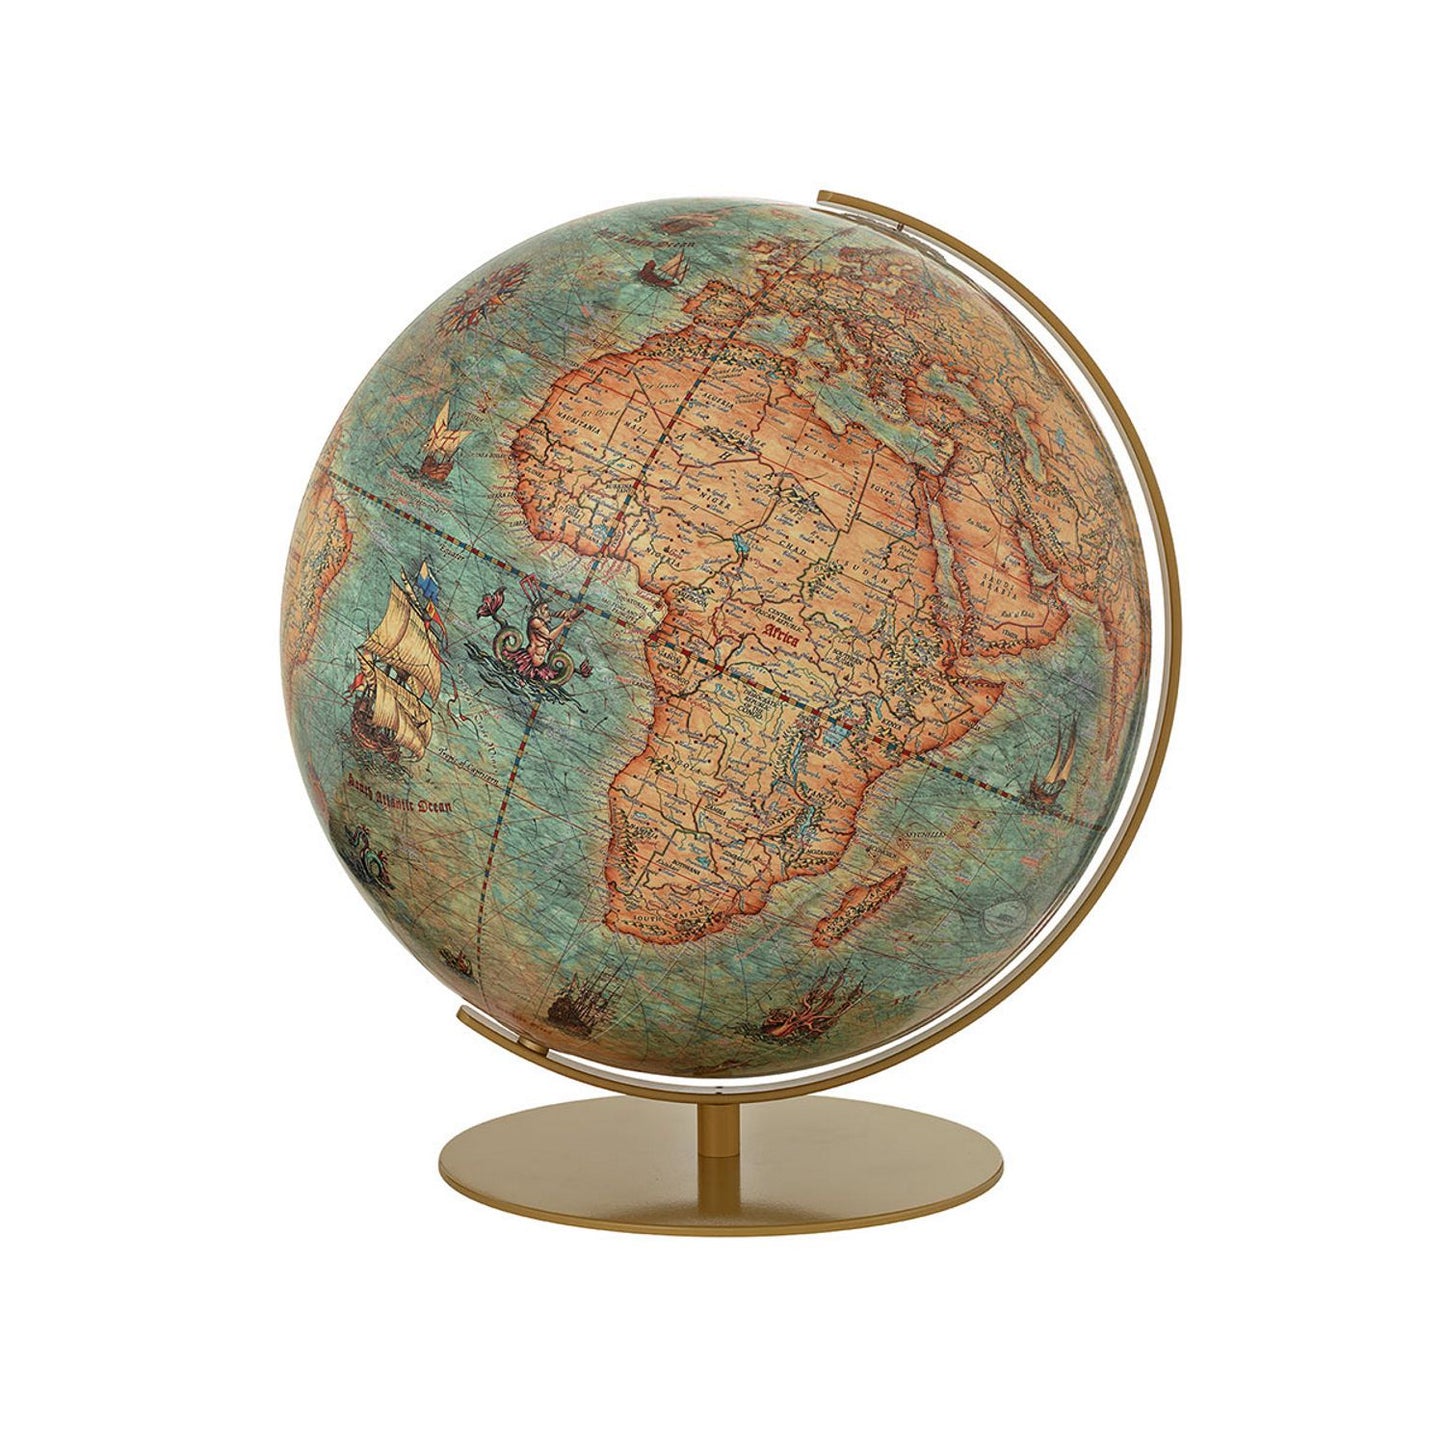 Columbus Imperial globe de table, 400 mm, globe lumineux, avec carte historique